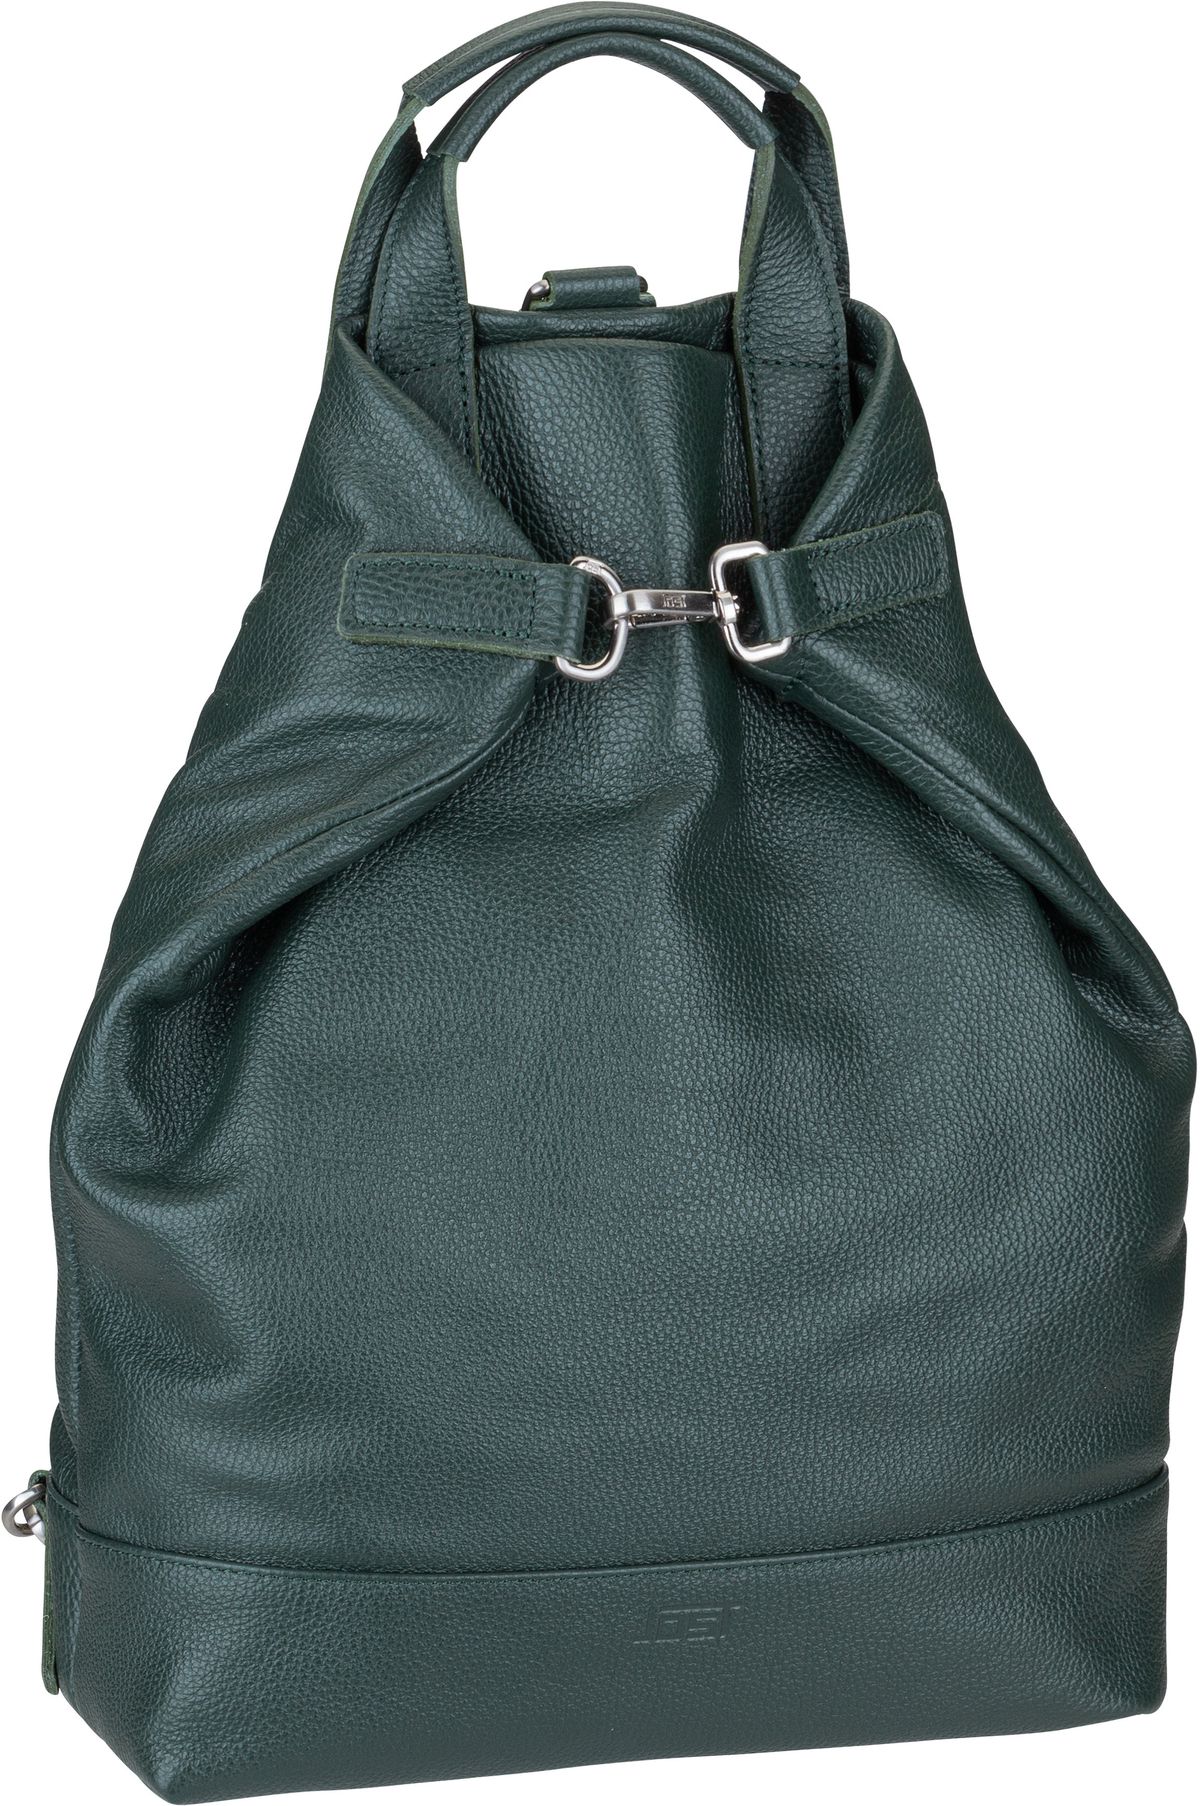 Jost Vika X-Change Bag S  in Bottlegreen (14.4 Liter), Rucksack / Backpack